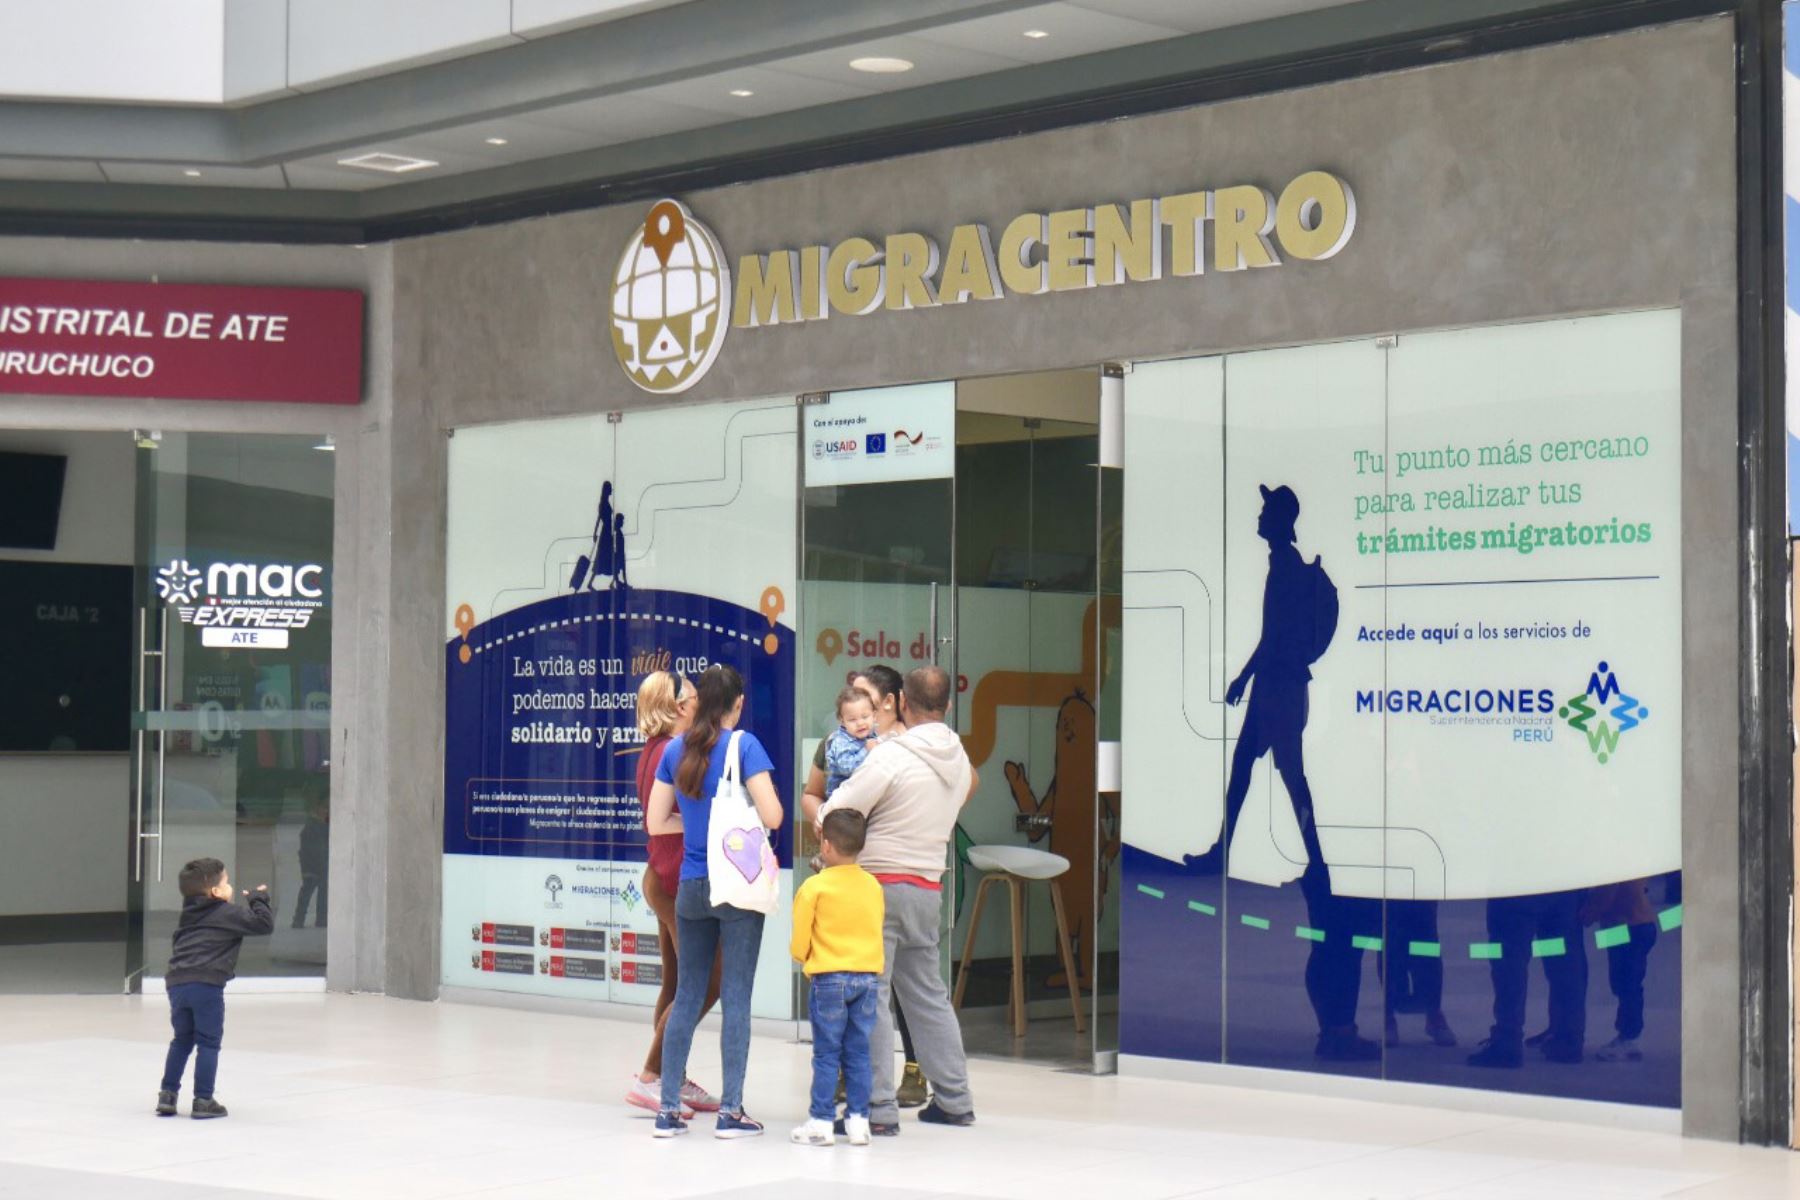 El primer Migracentro fue inaugurado en marzo, en el mall Real Plaza Puruchucho, en el distrito de Ate, Lima, y en él hasta el momento se han atendido a más de 8,000 personas, entre ciudadanos peruanos y extranjeros. ANDINA/ Cedro.